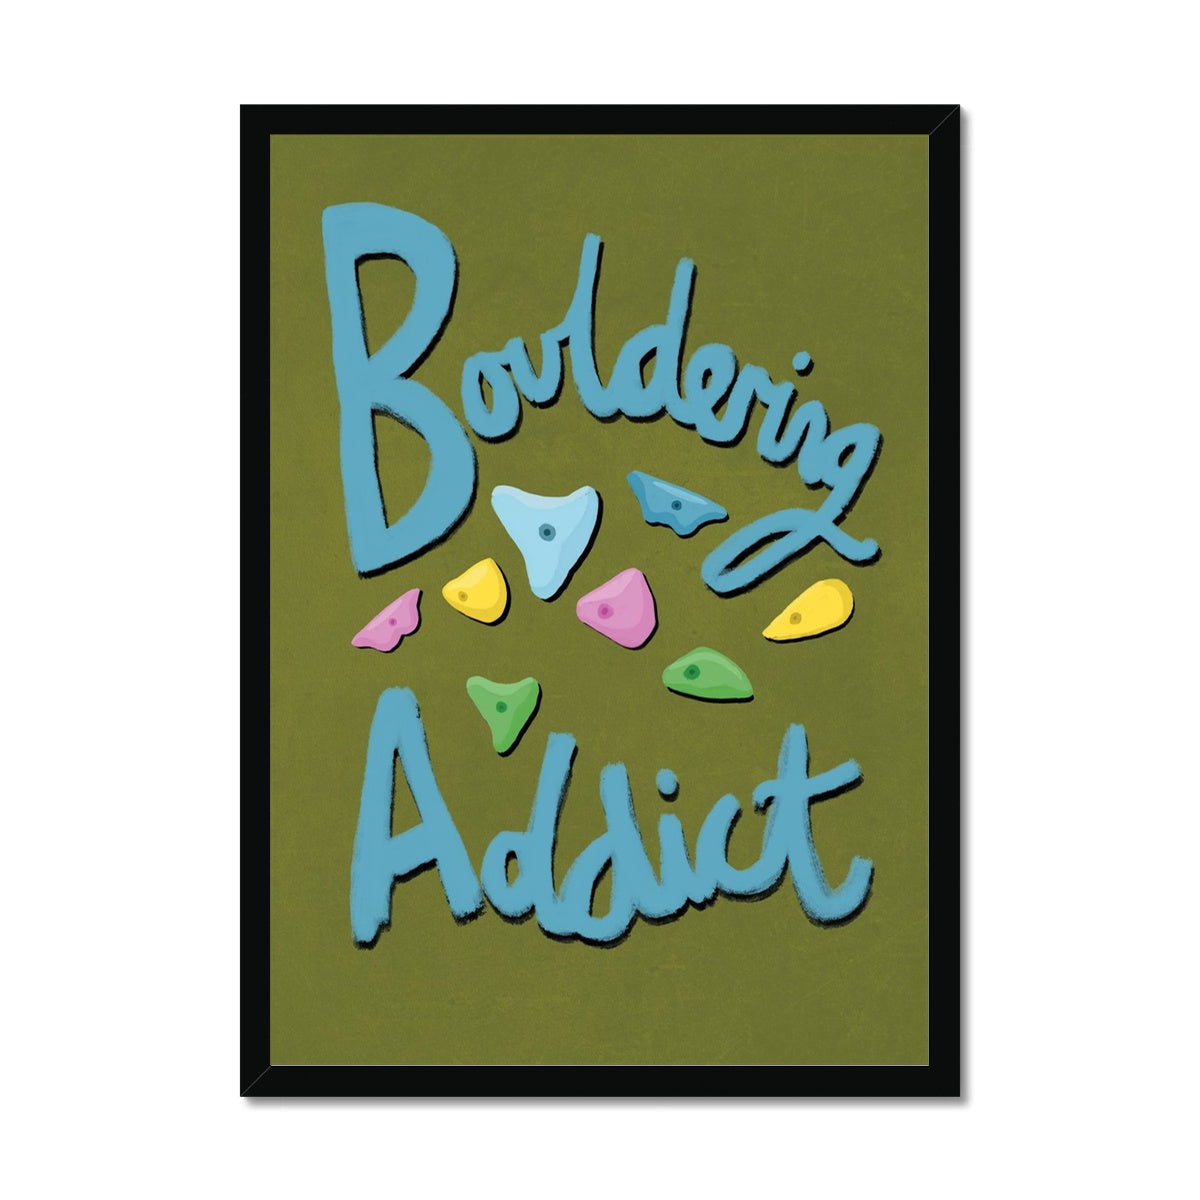 Bouldering Addict - Olive Green and Blue Framed Print